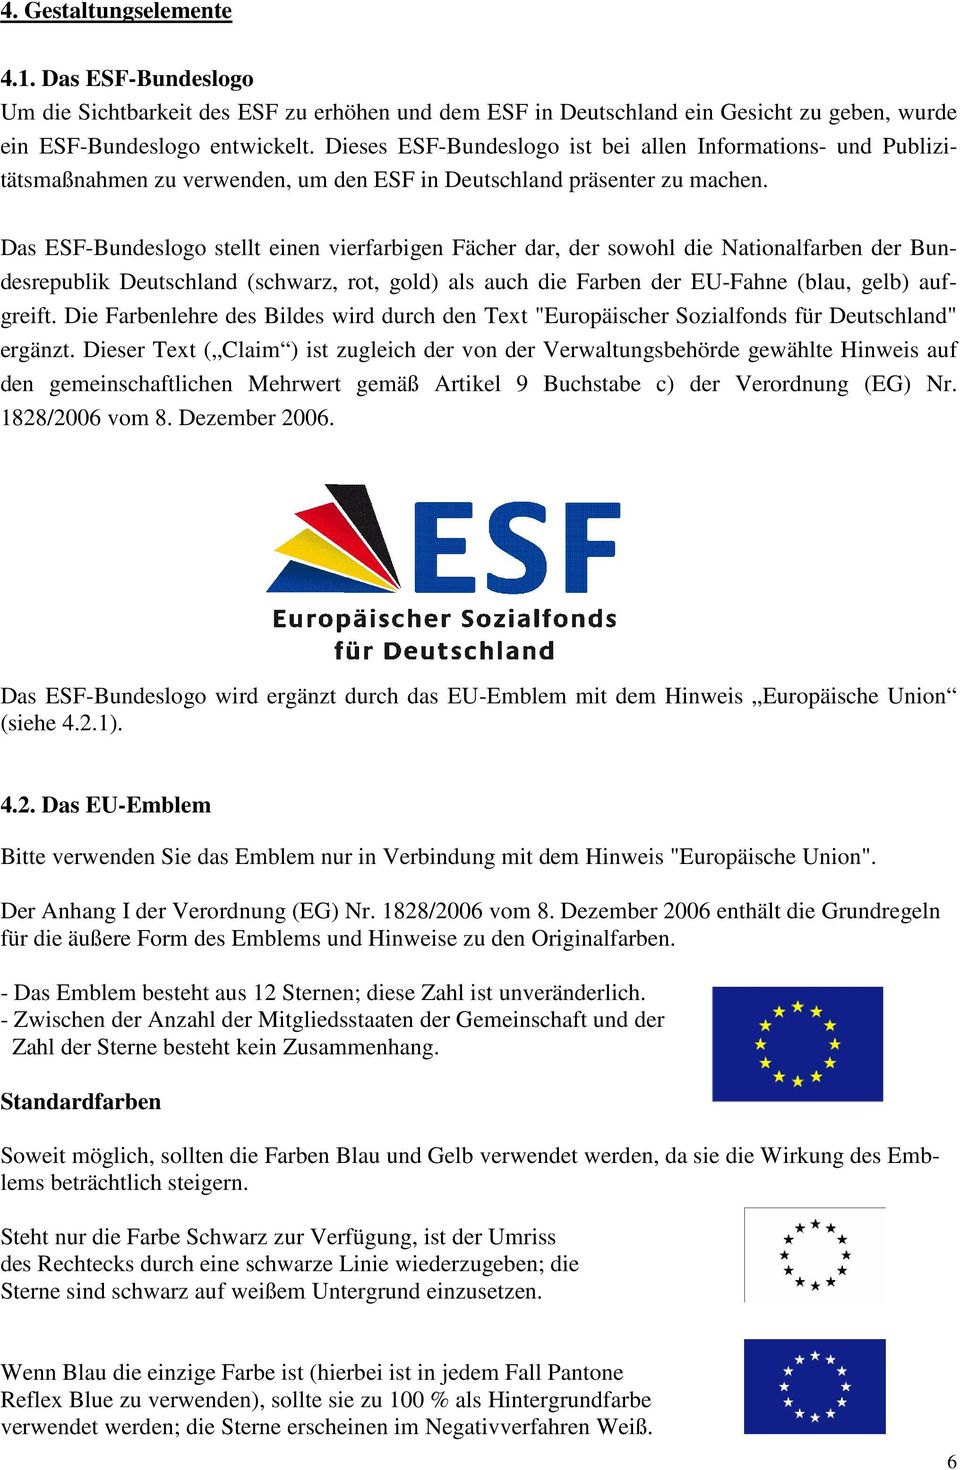 Das ESF-Bundeslogo stellt einen vierfarbigen Fächer dar, der sowohl die Nationalfarben der Bundesrepublik Deutschland (schwarz, rot, gold) als auch die Farben der EU-Fahne (blau, gelb) aufgreift.